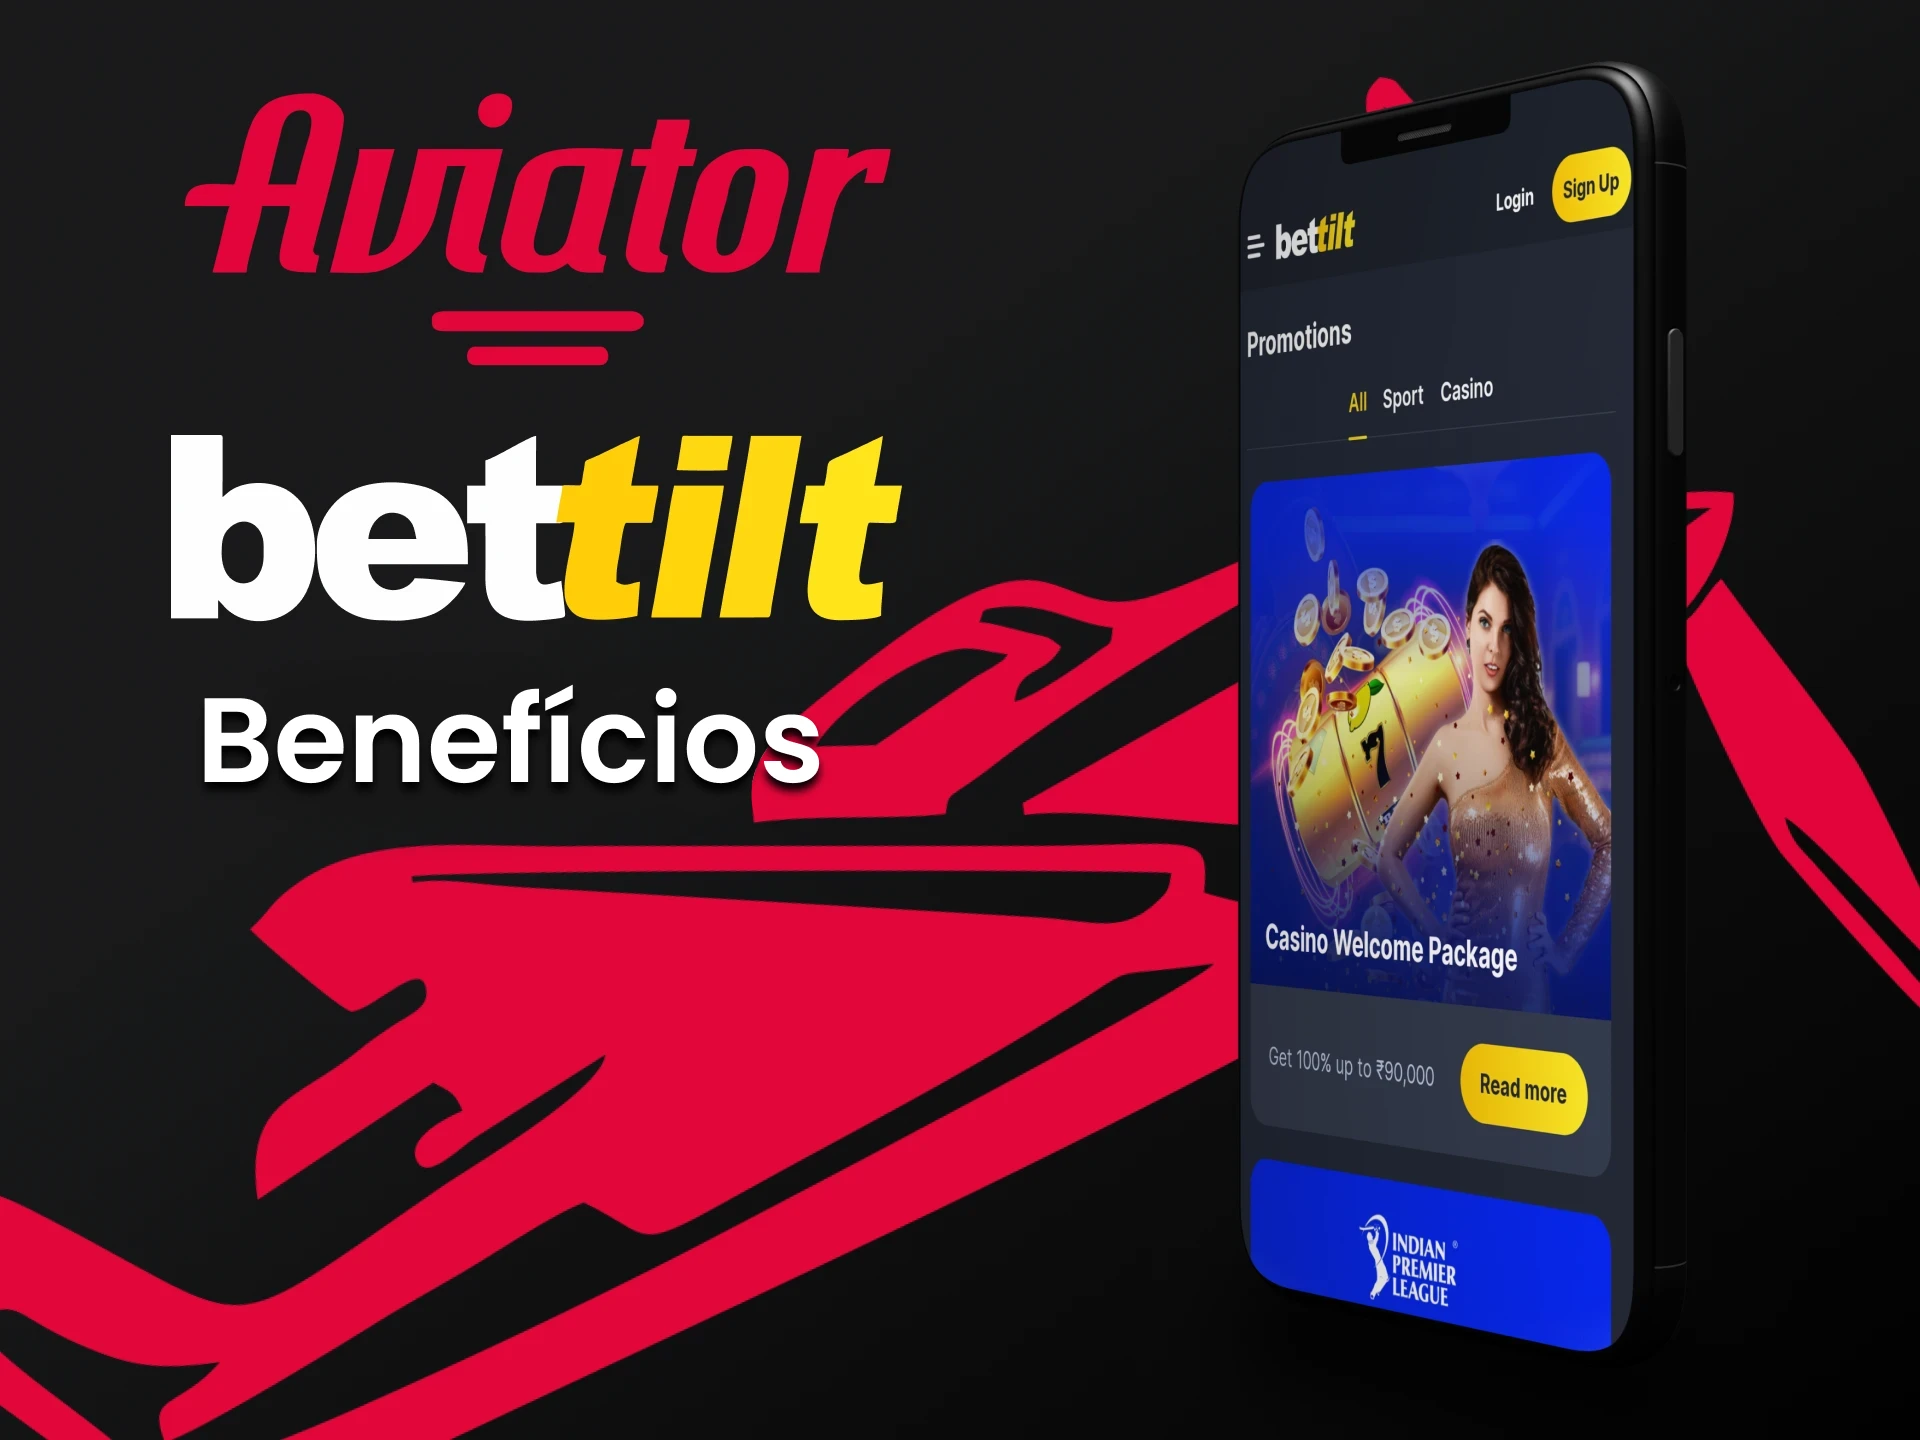 Descubra as formas de transações por meio do aplicativo Bettilt para o jogo Aviator.